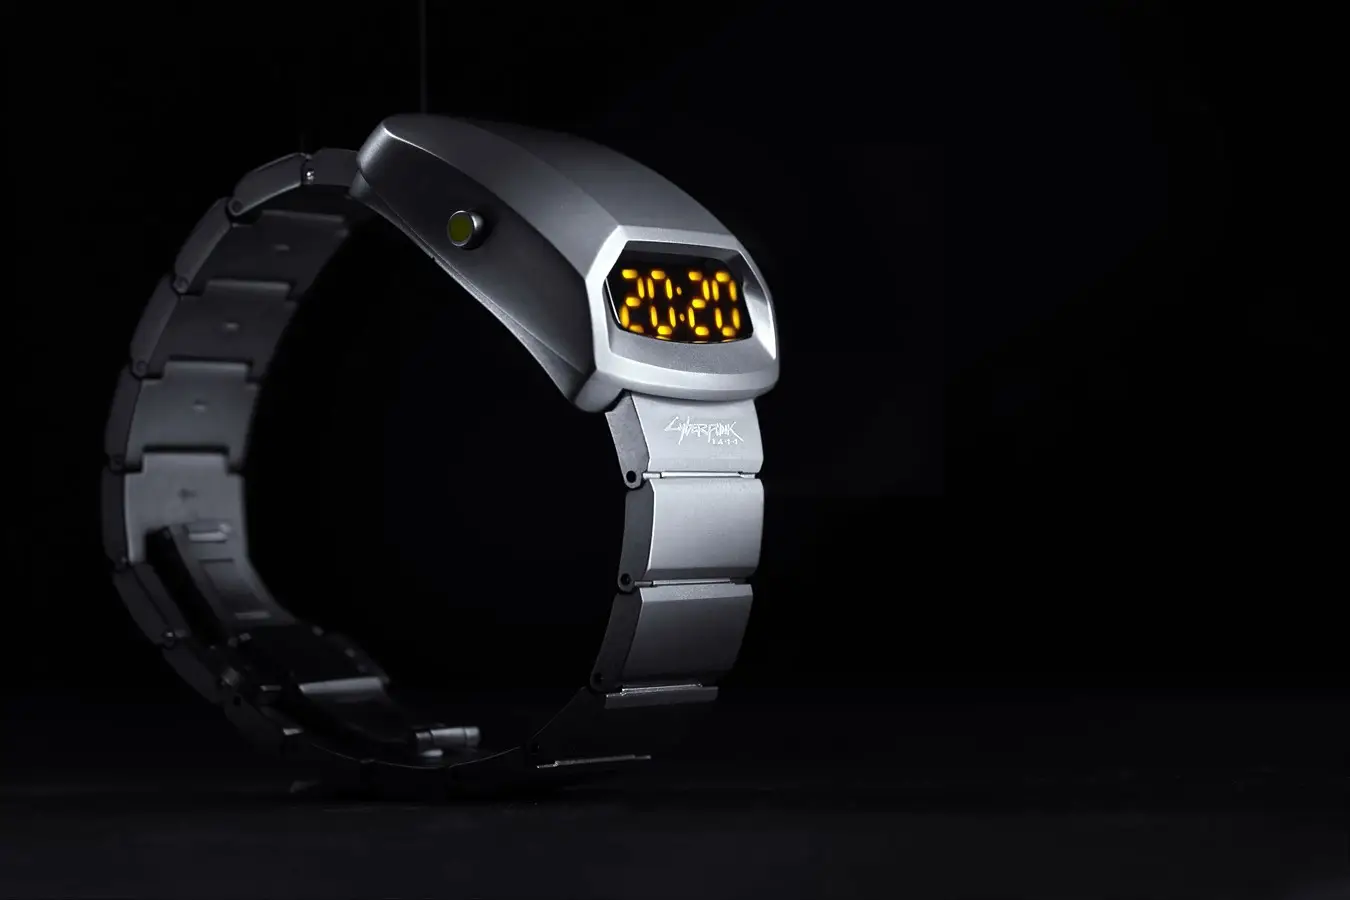 Cyberpunk T-2077 by Błonie – zegarek przyszłości z tokenem NFT